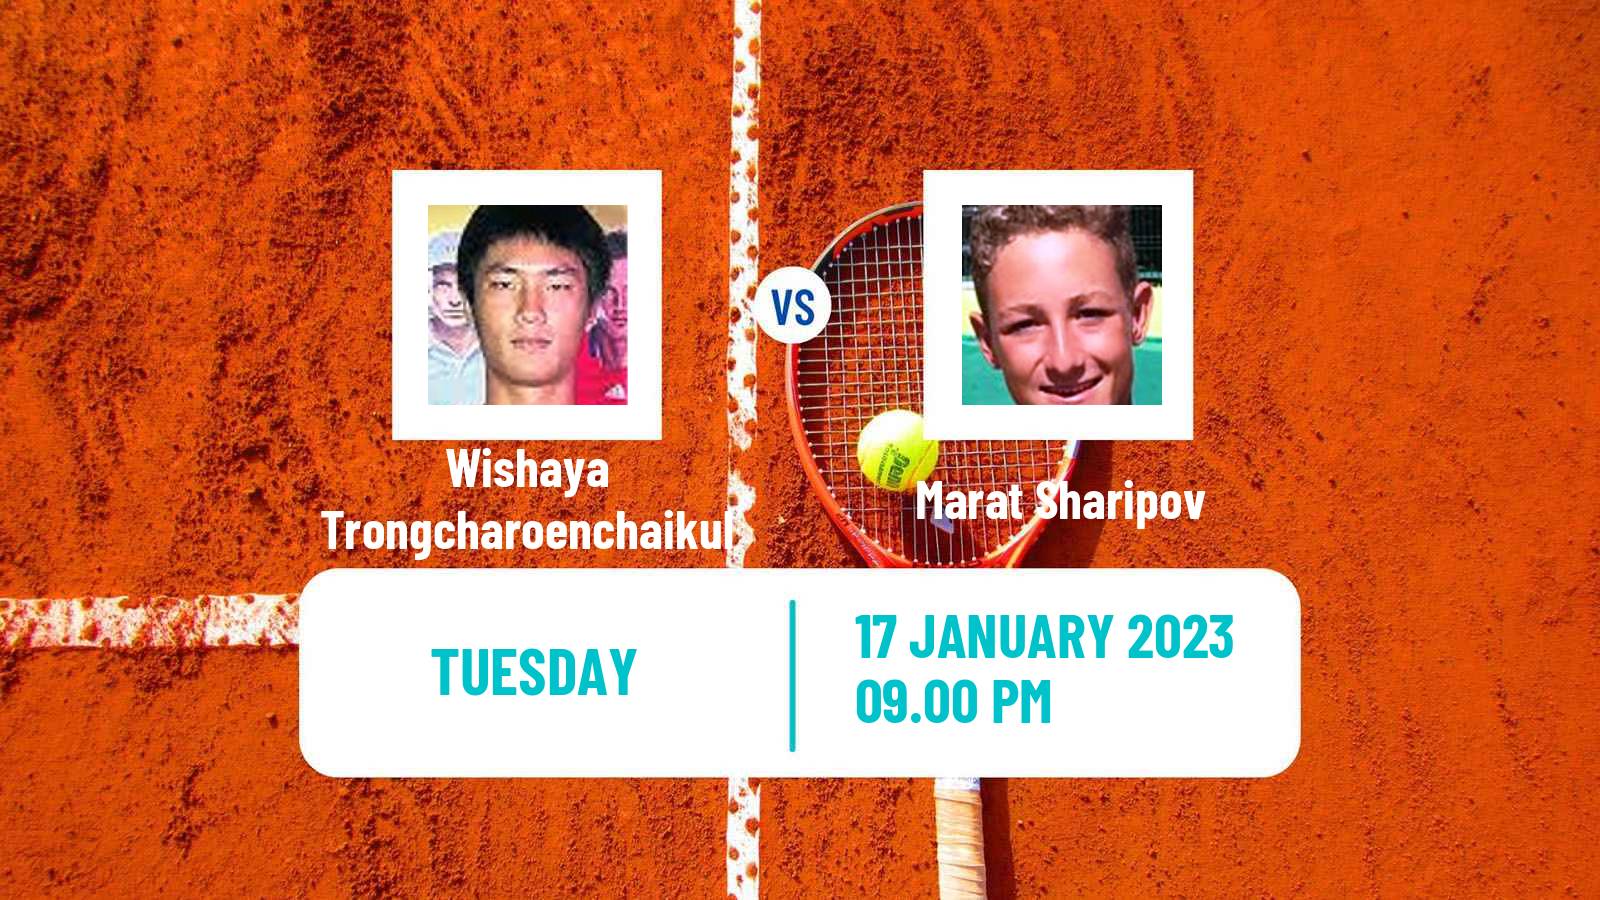 Tennis ITF Tournaments Wishaya Trongcharoenchaikul - Marat Sharipov